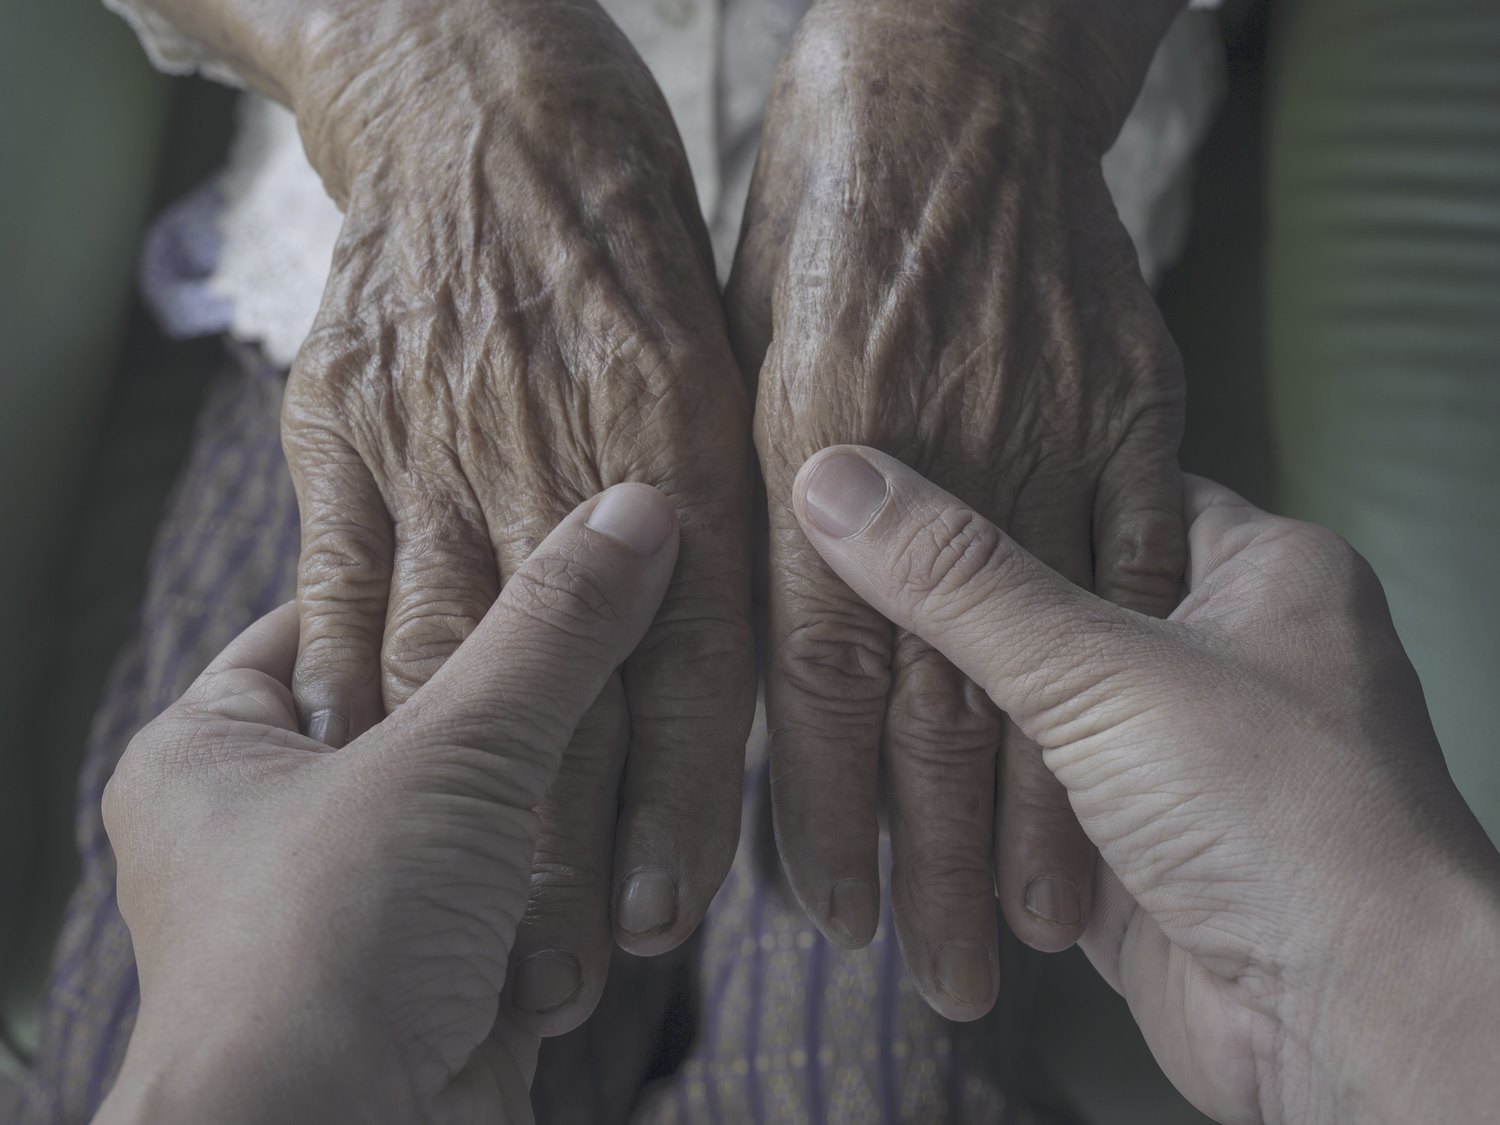 Una anciana gallega de 106 años supera el coronavirus completamente asintomática